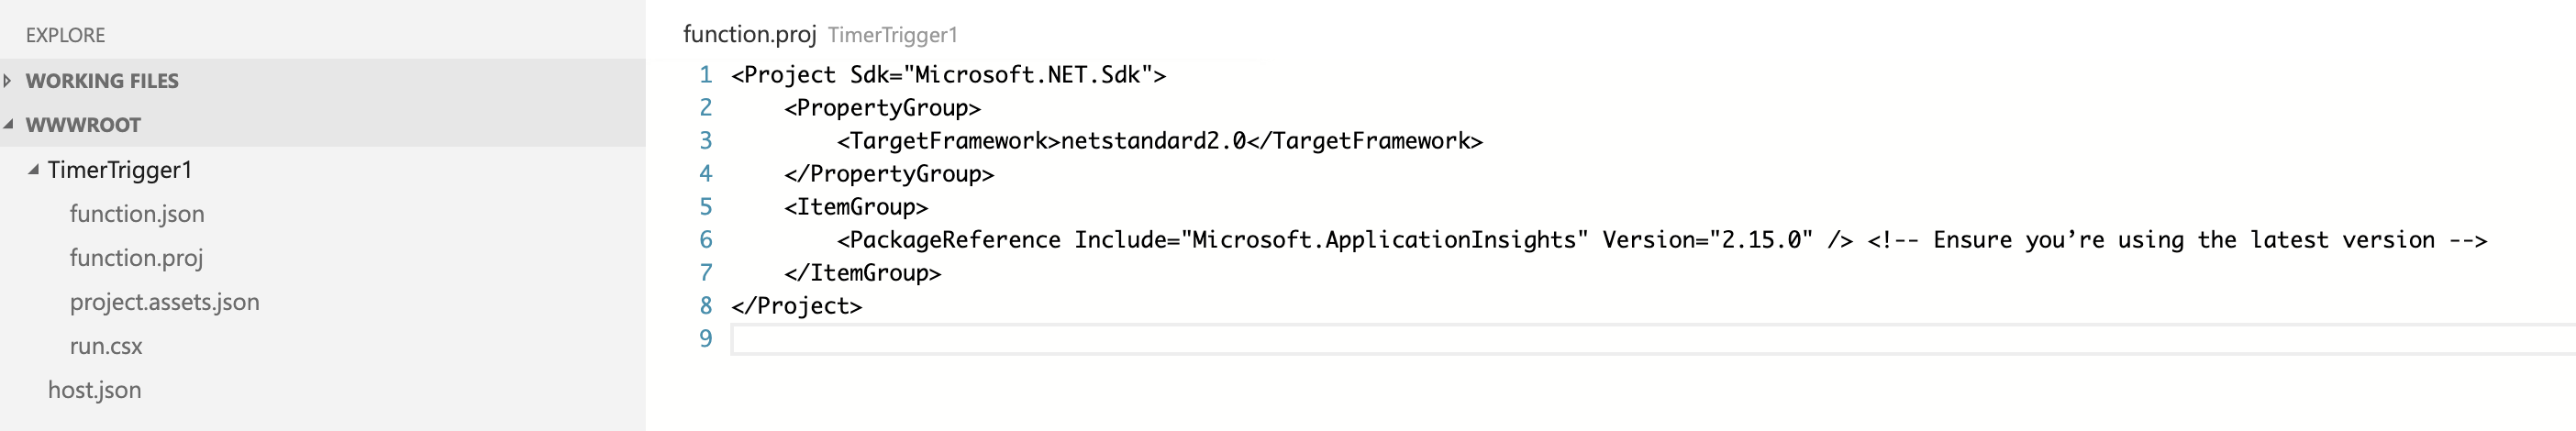 App Service Editor の function.proj を示すスクリーンショット。